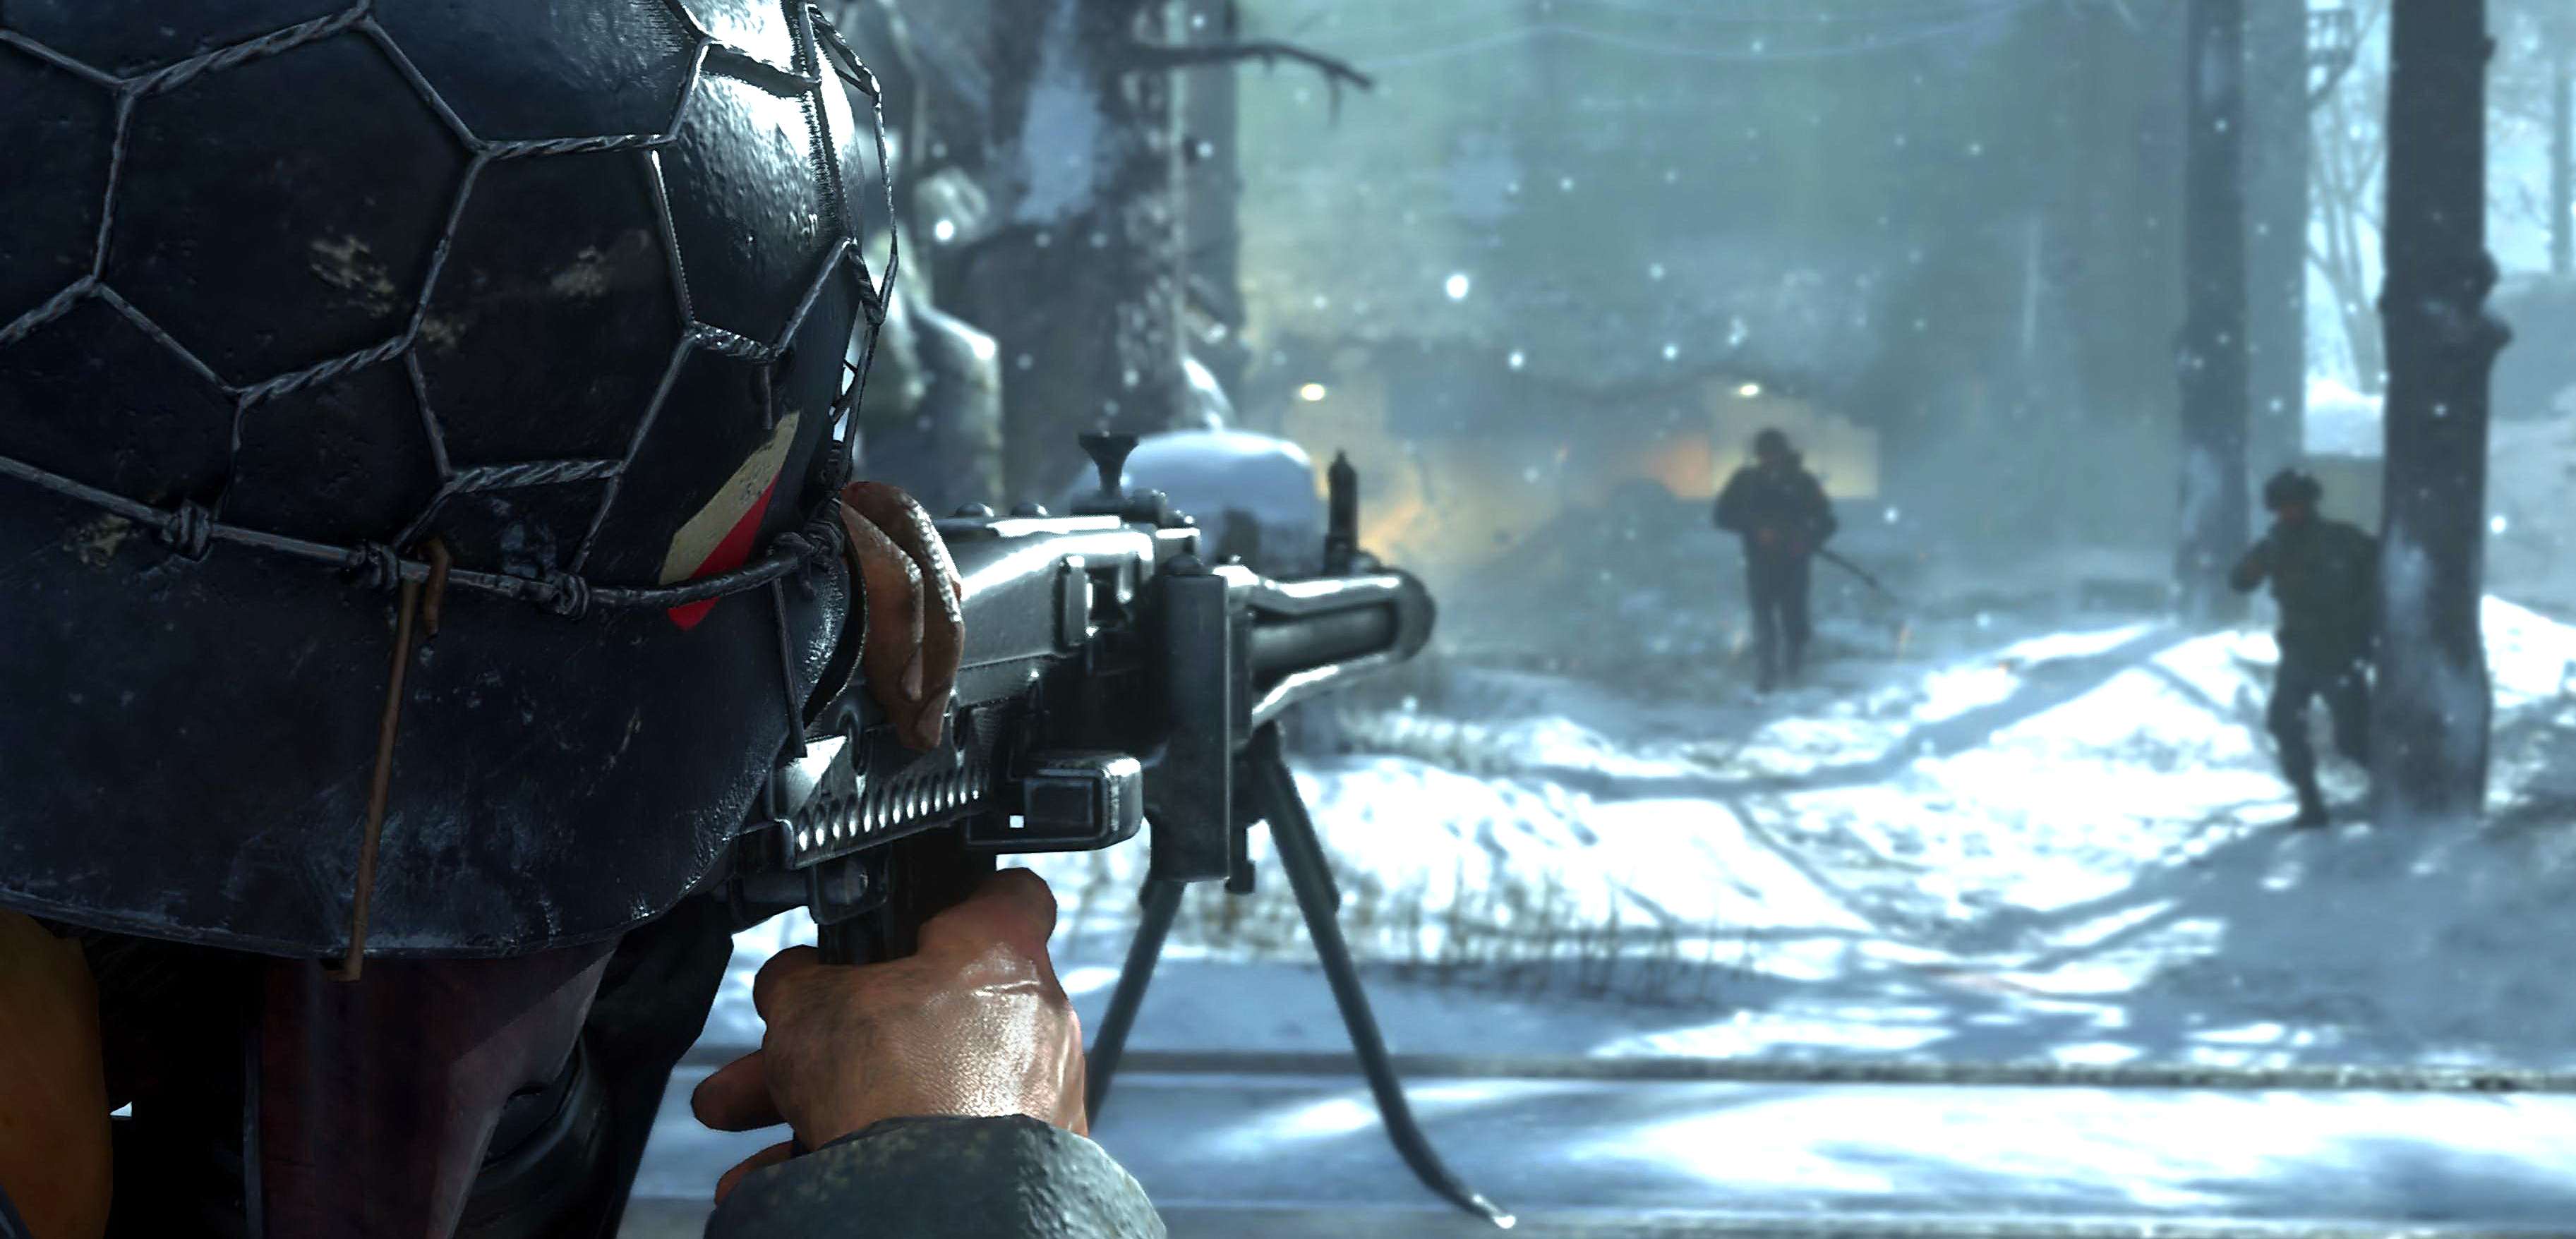 Call of Duty: WWII sprzedaje się znacznie lepiej niż CoD: Infinite. 1% pudełek kupili gracze PC z UK